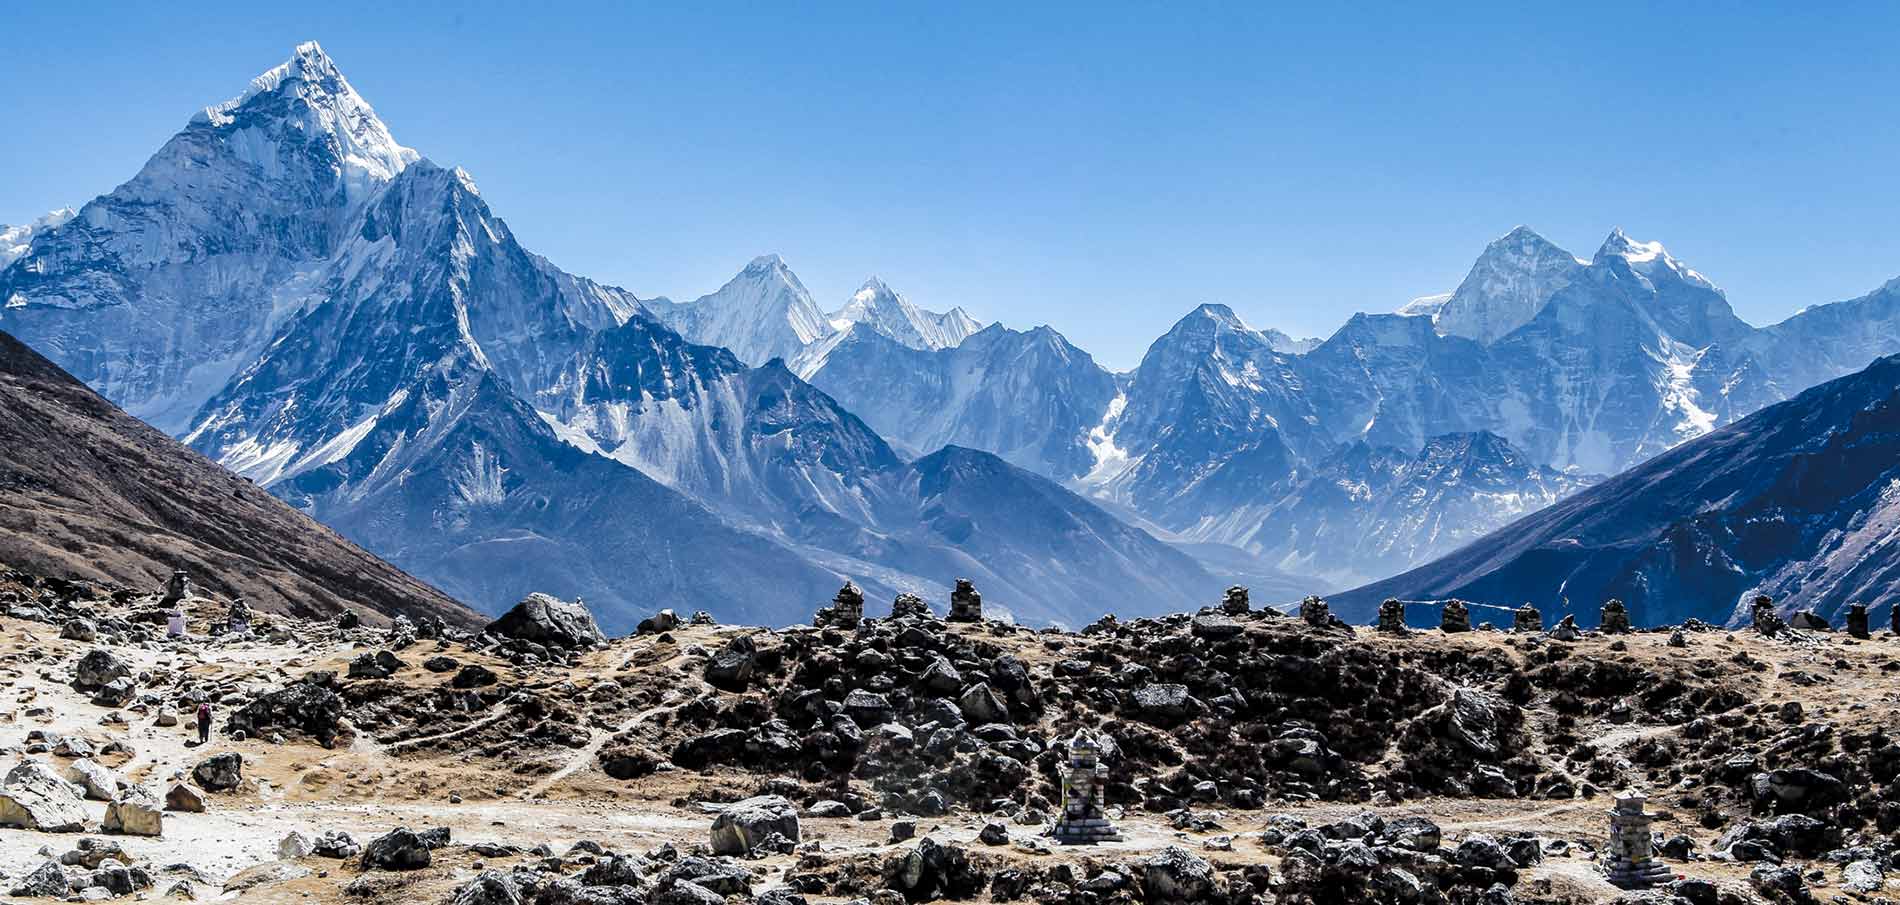 Bí ẩn về cấu trúc rỗng và kho báu bí ẩn bên trong dãy Himalaya- Ảnh 1.